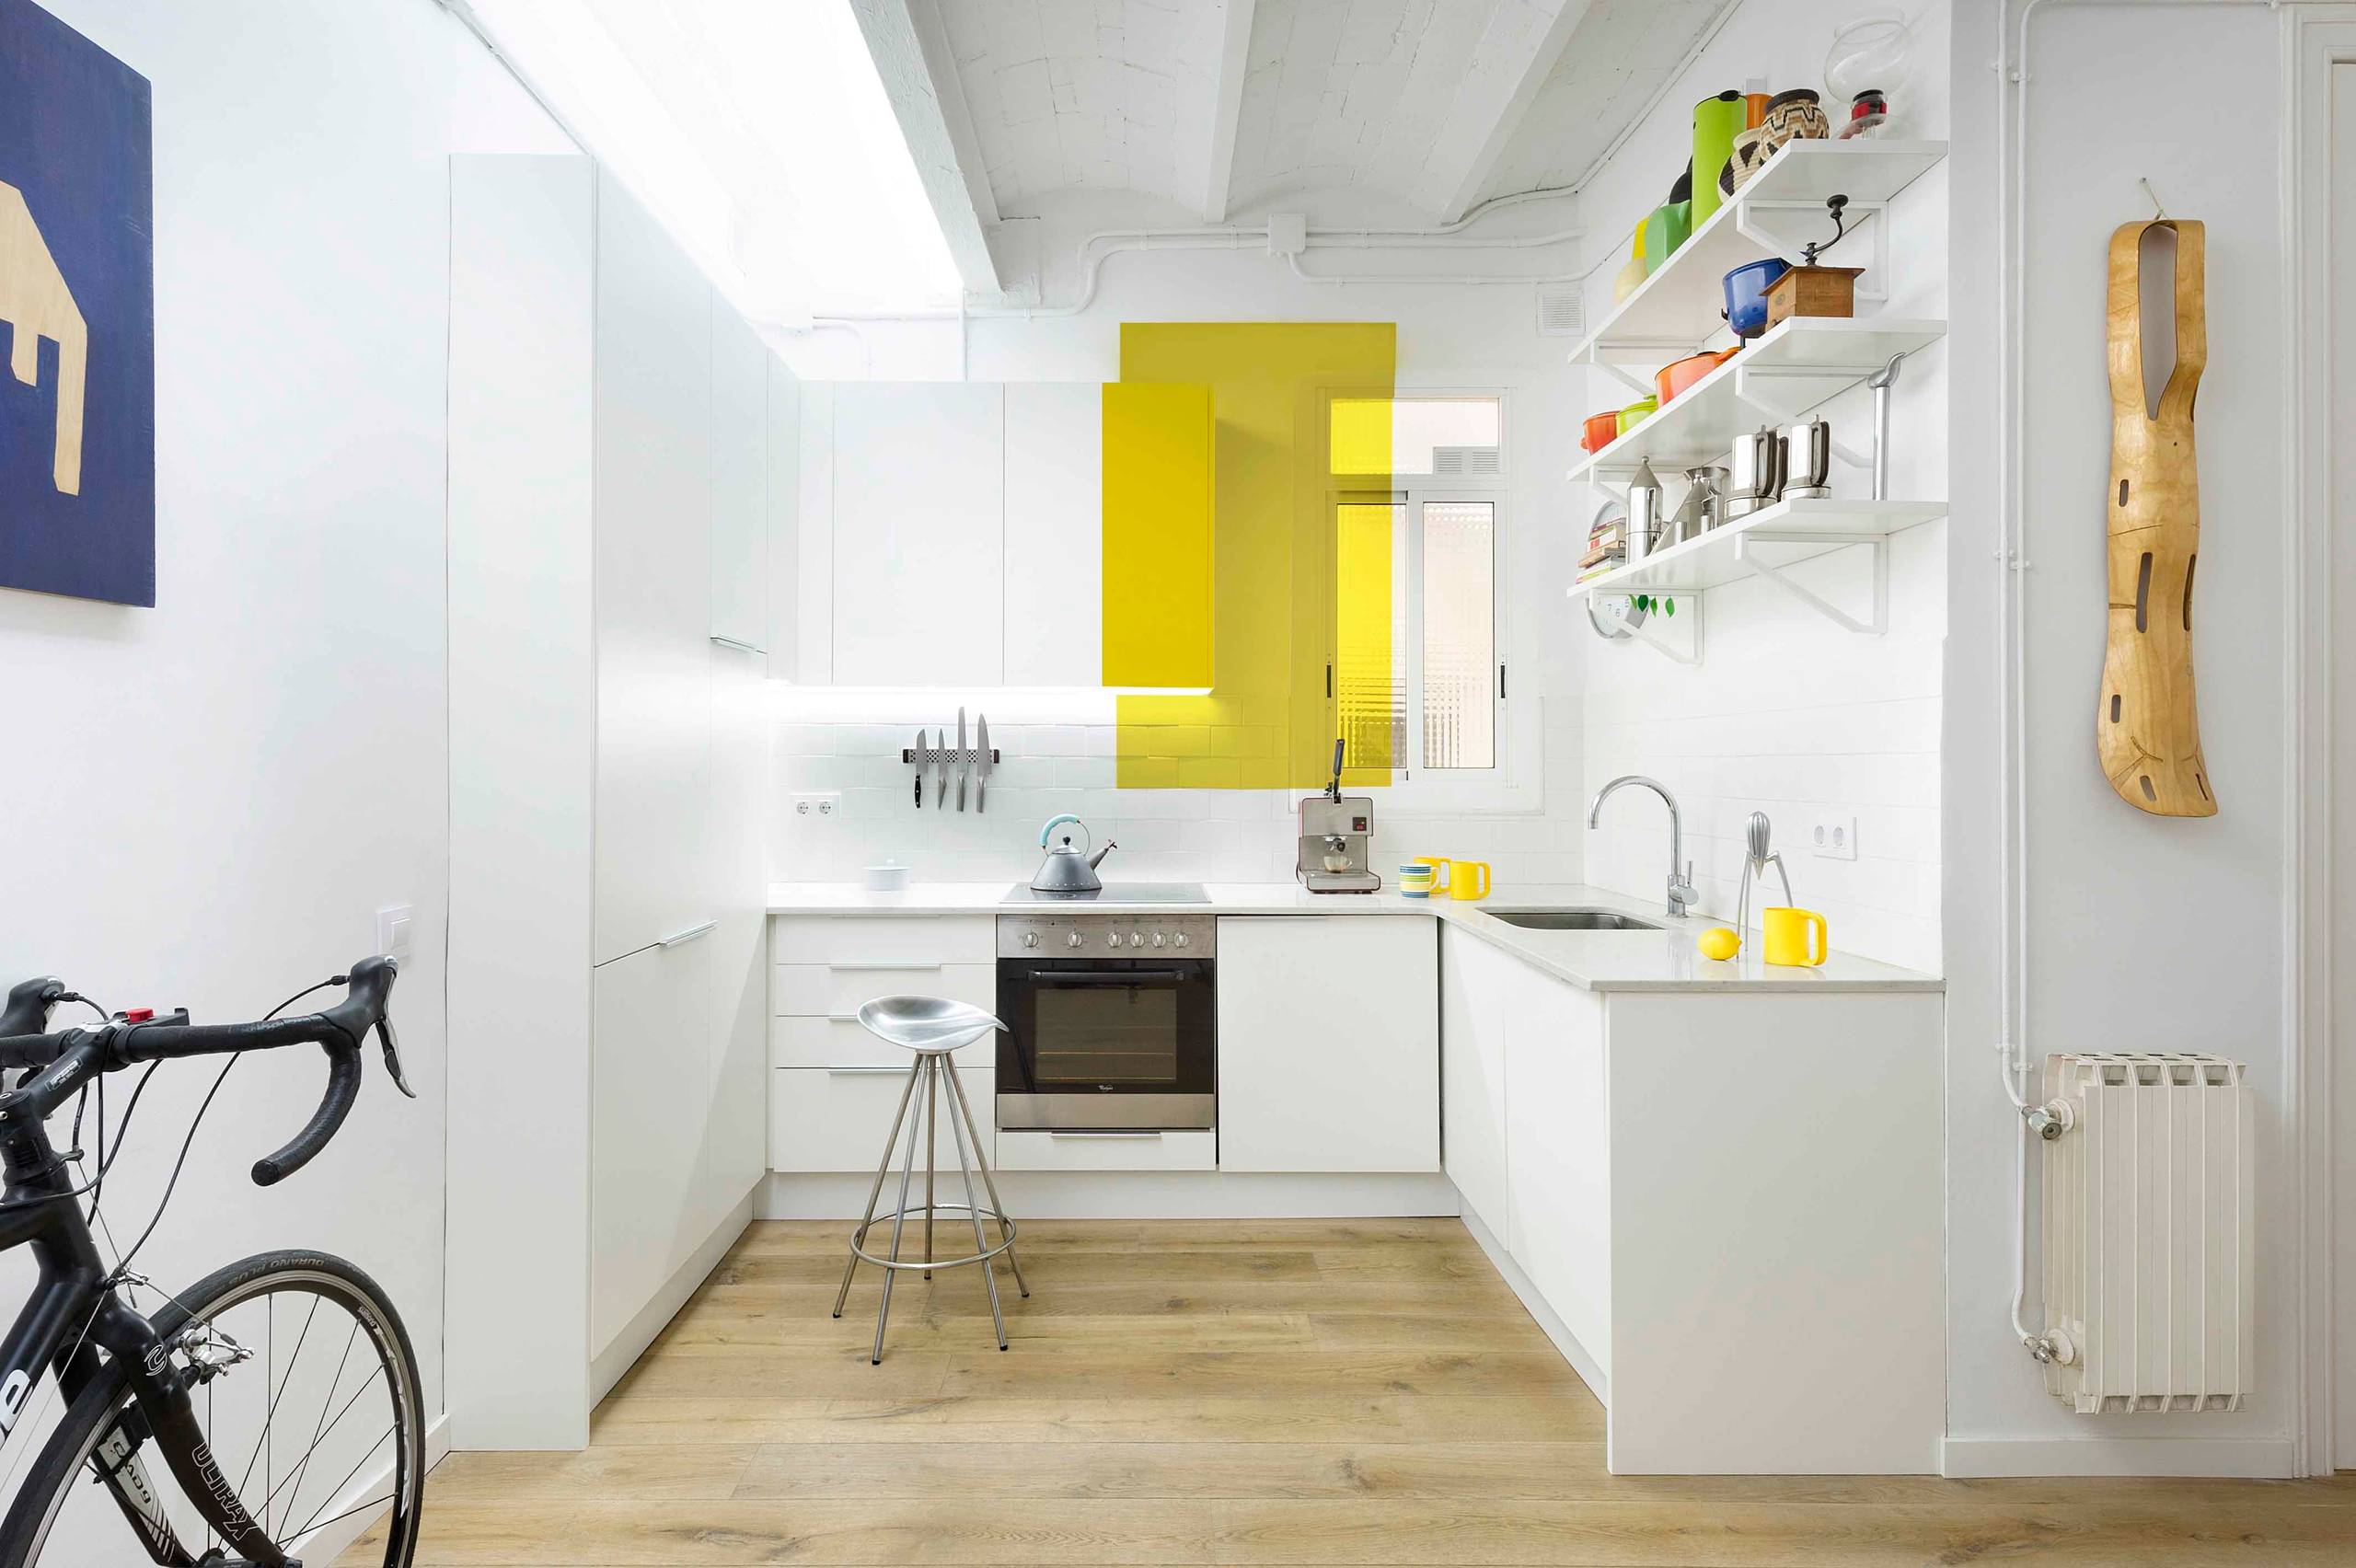 Как и чем оформить стены на кухне: лучшие варианты дизайна кухонных стен со стильными фото